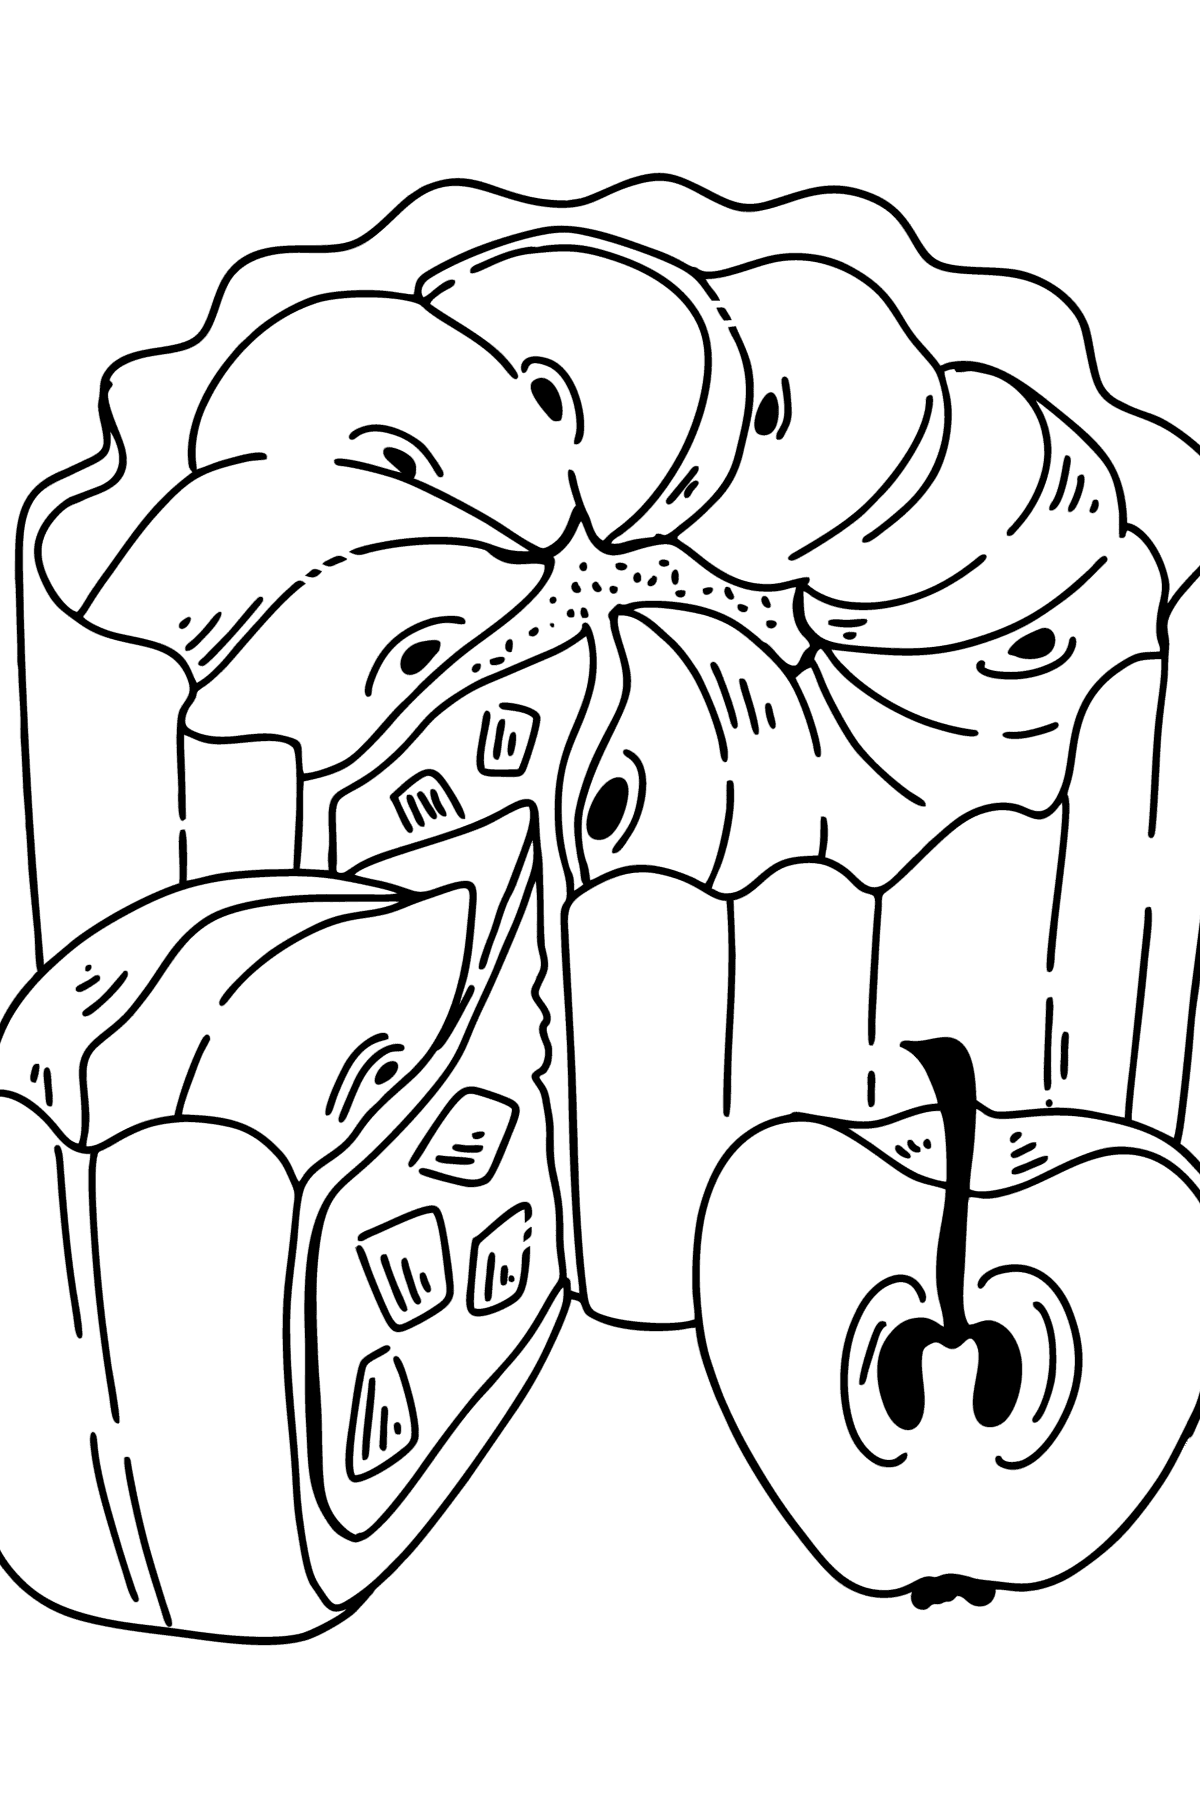 Раскраска Яблочный пирог или Шарлотка - Картинки для Детей